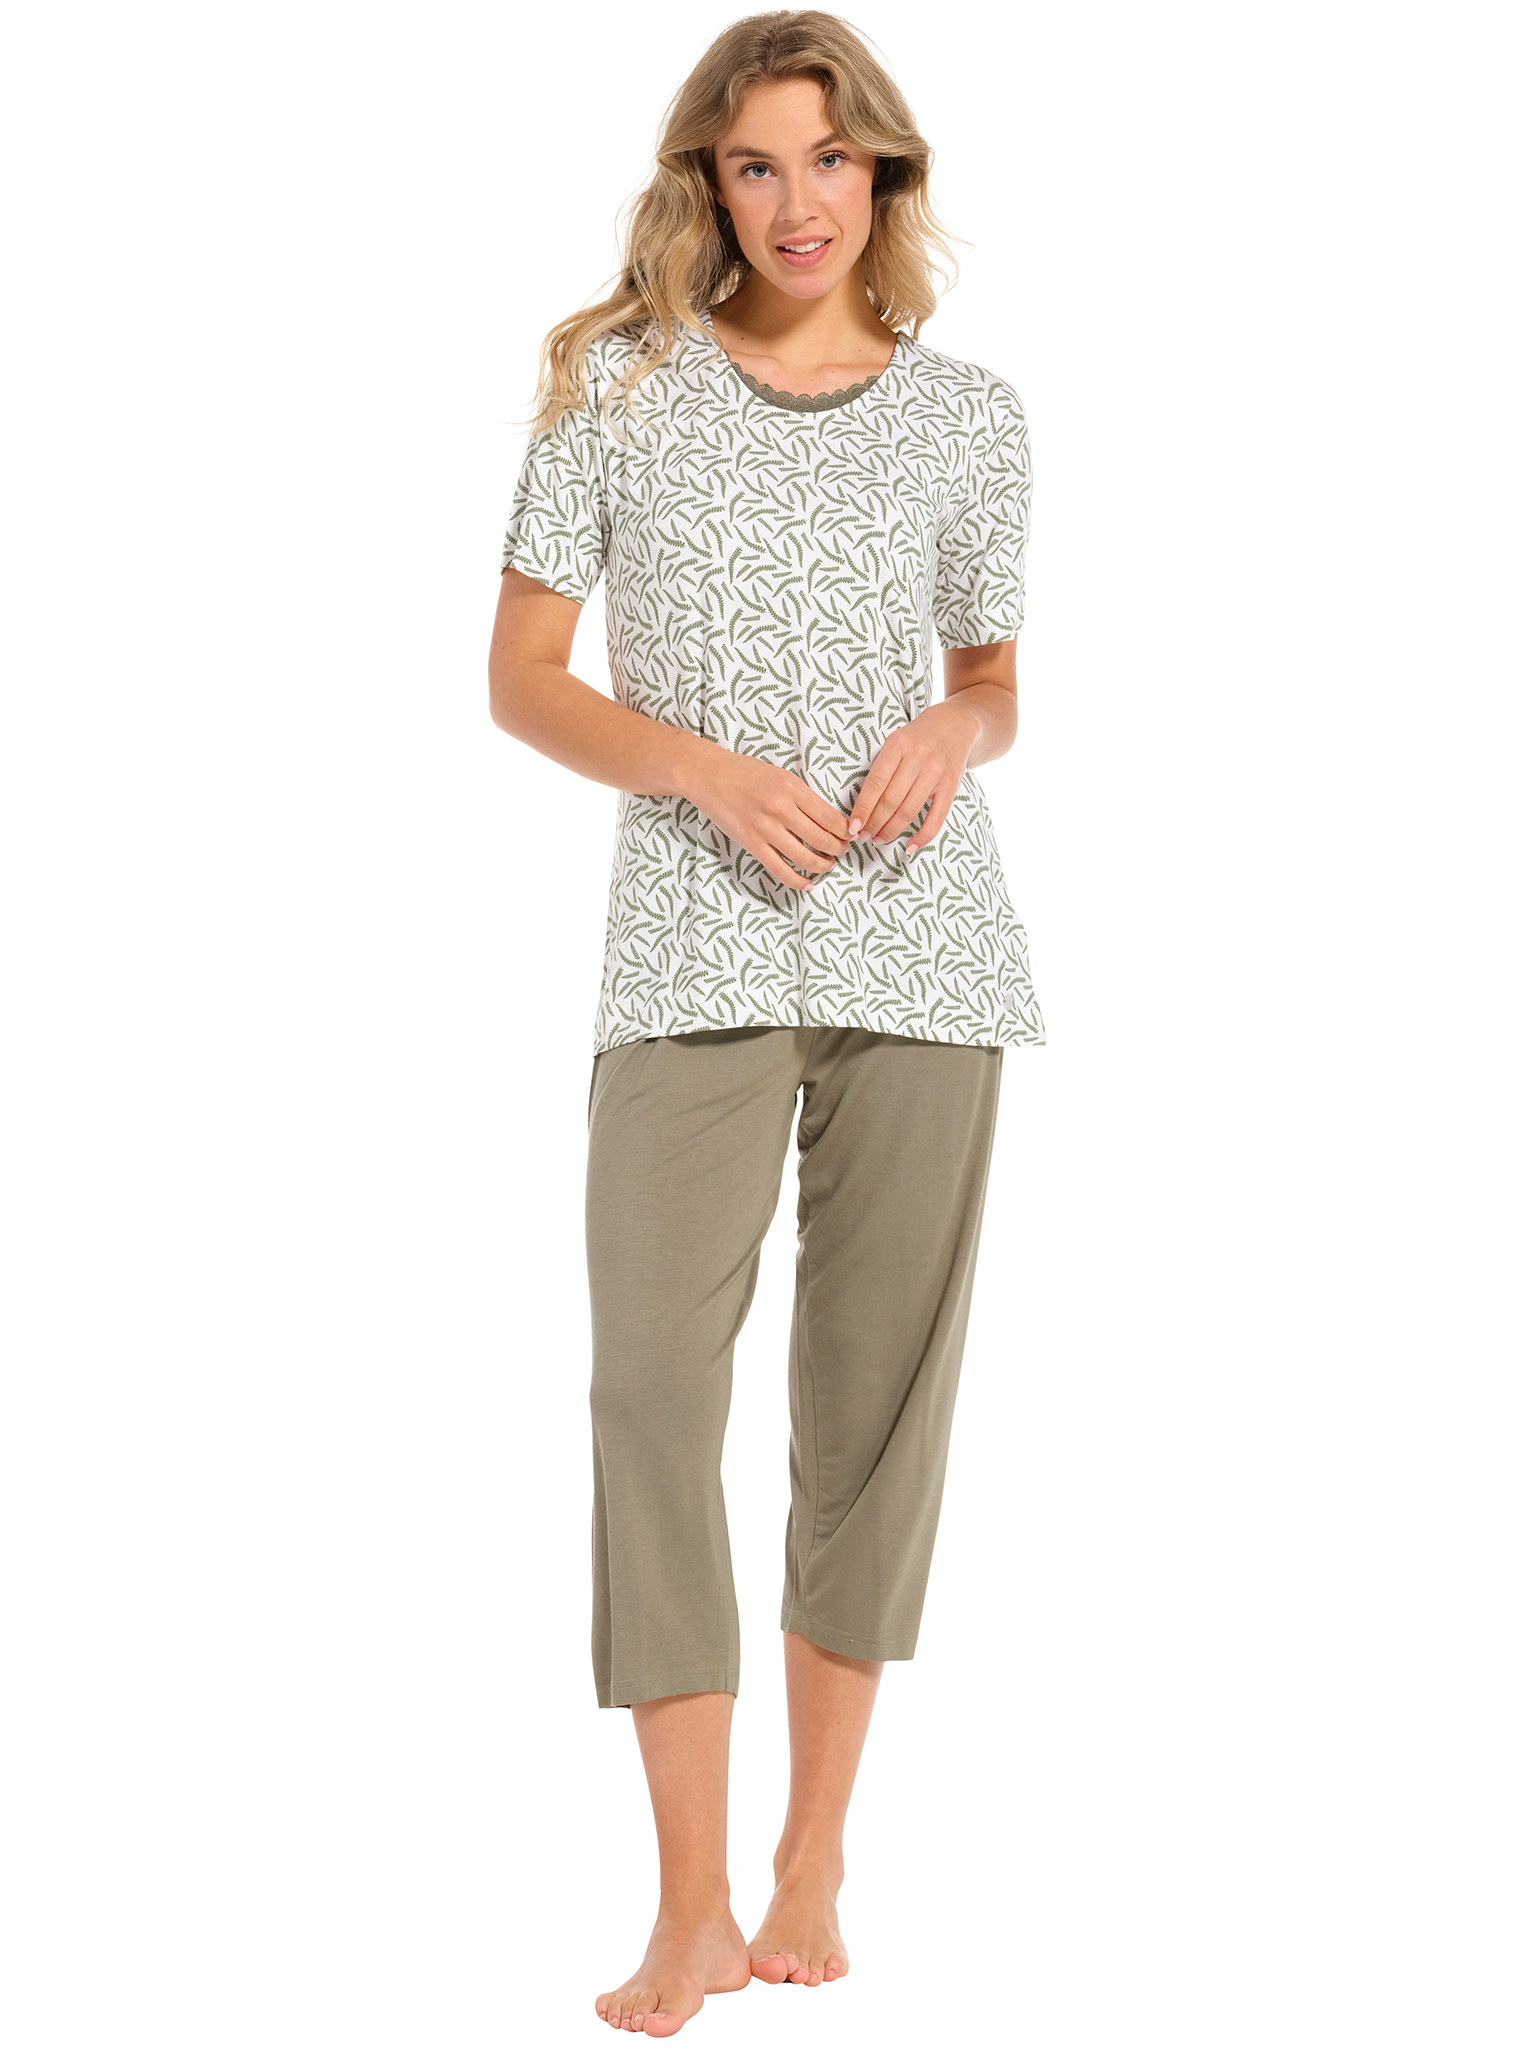 Pastunette pyjama dames - wit/donkergroen met print - 20241-148-2/720 - maat 50